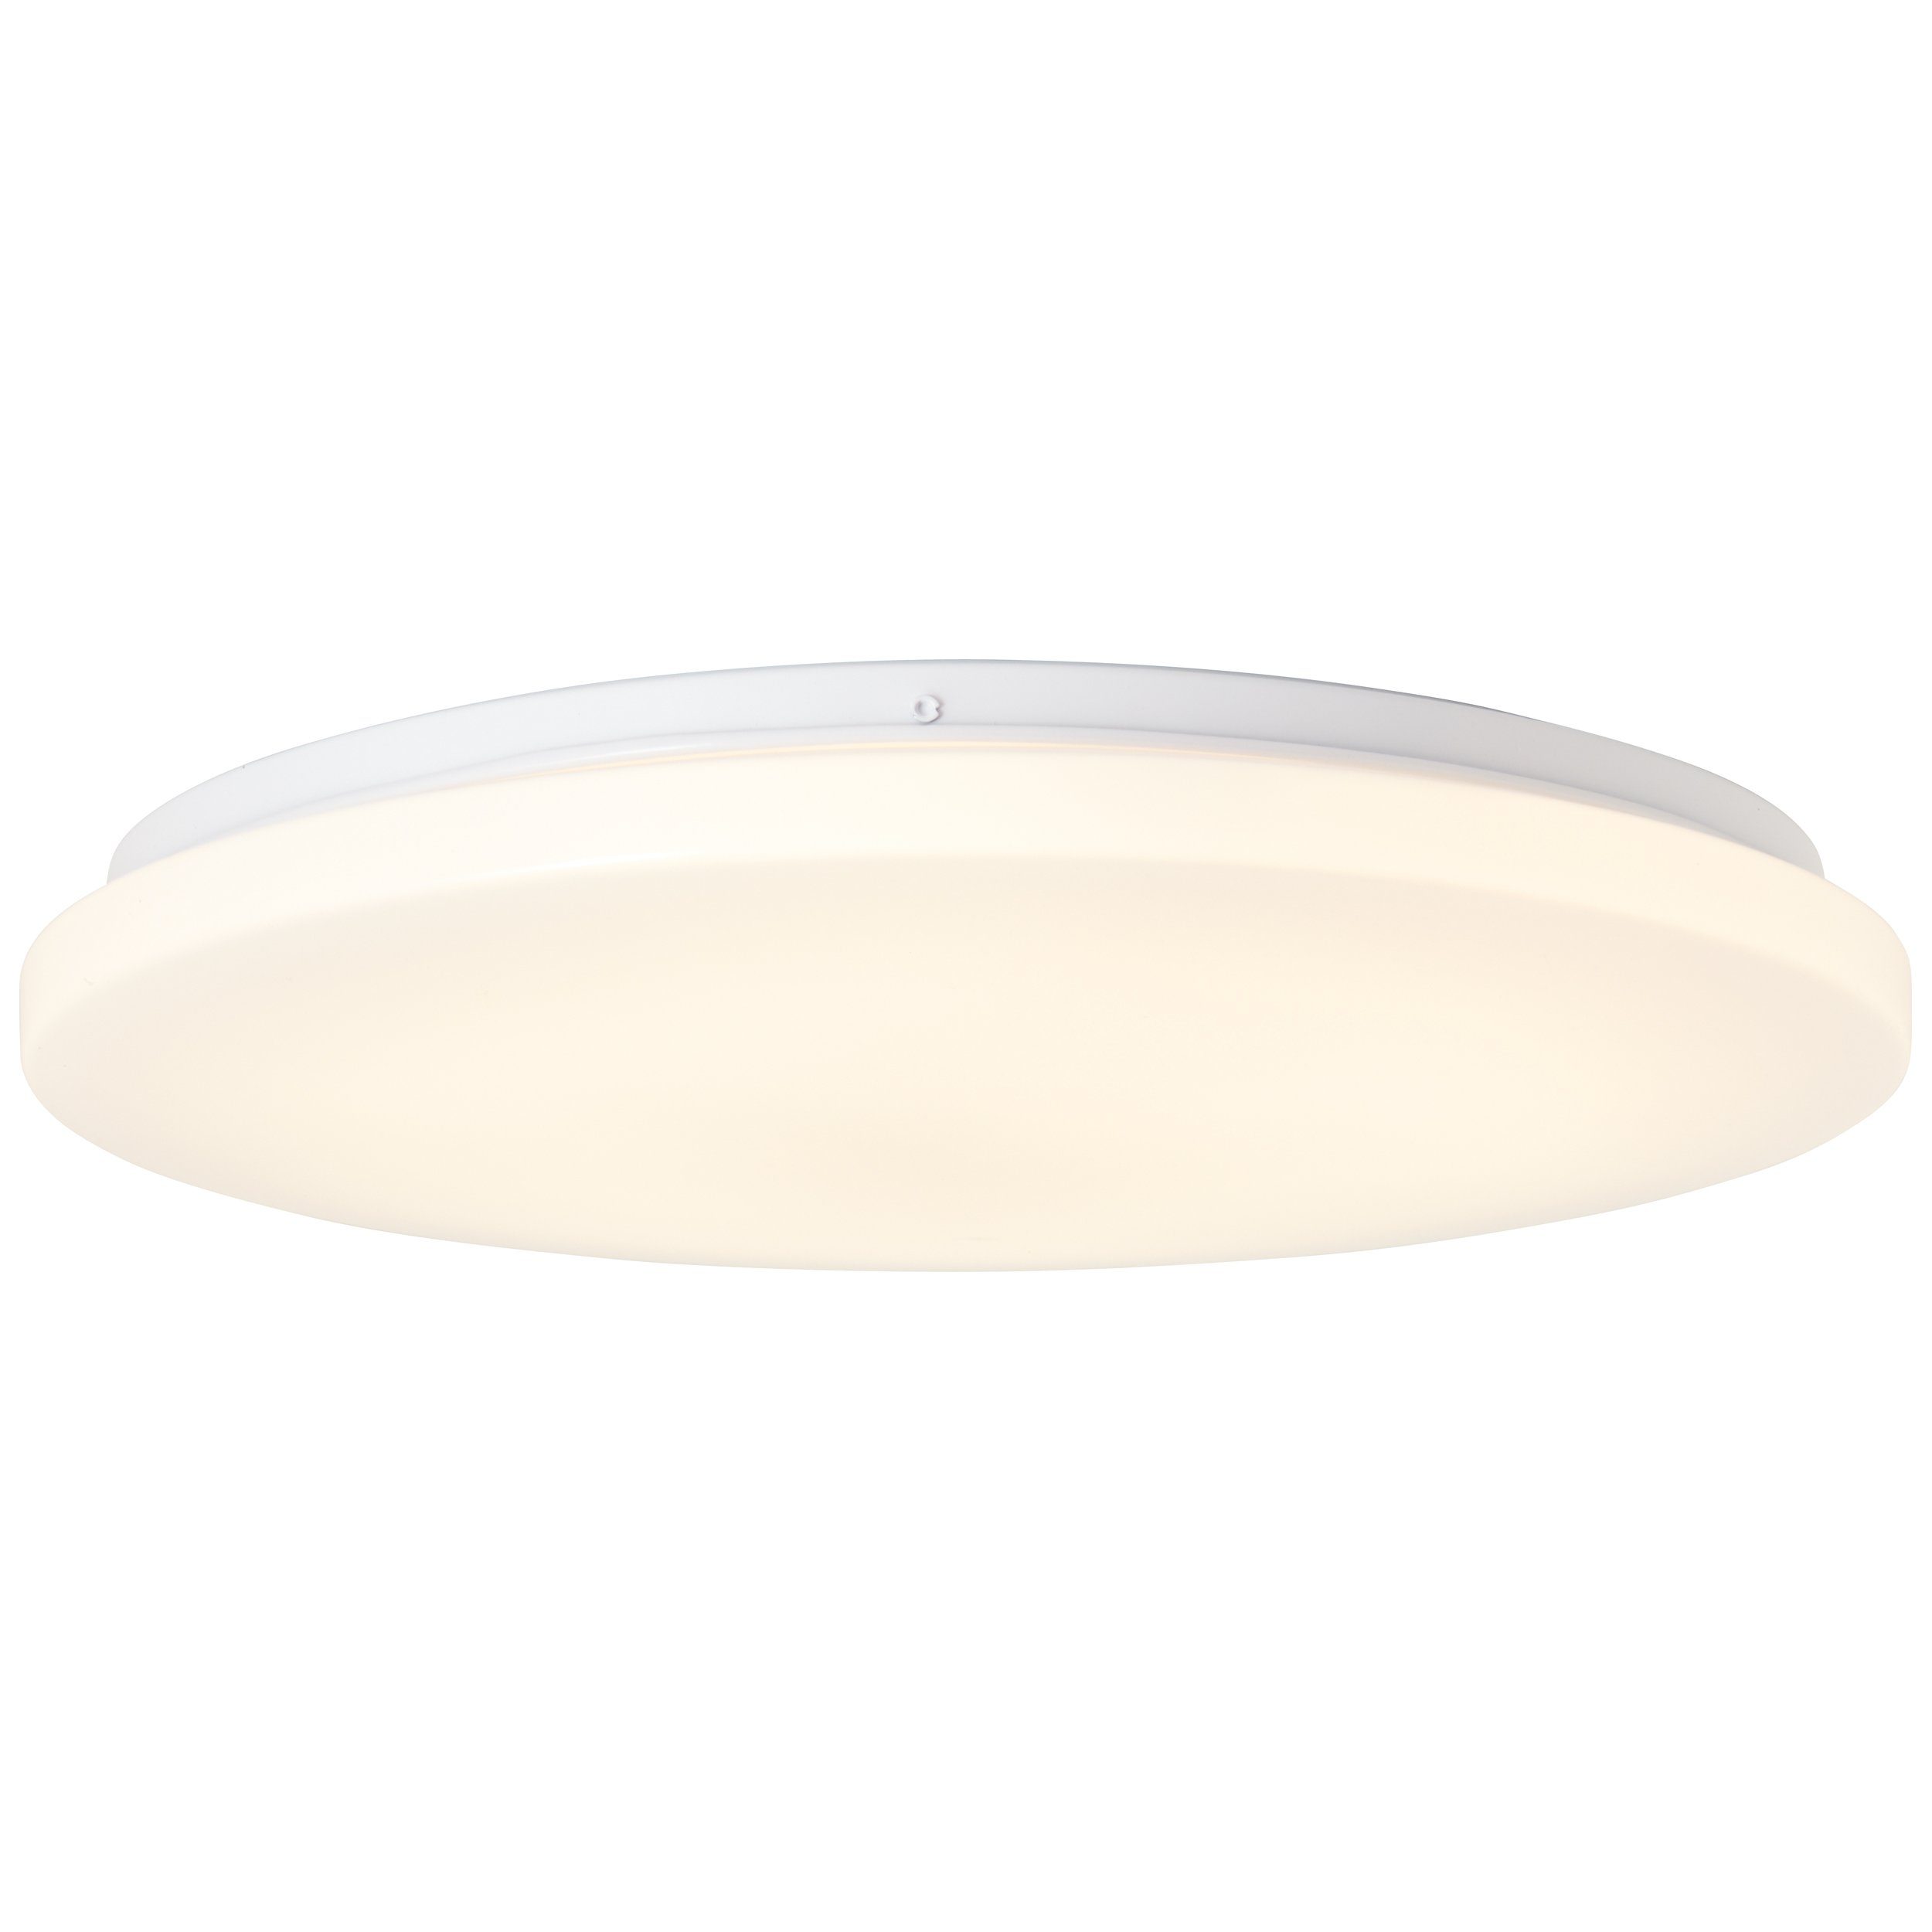 Alon, Brilliant LED Deckenleuchte integriert LED weiß, Alon 1x Deckenleuchte Metall/Kunststoff, 38cm